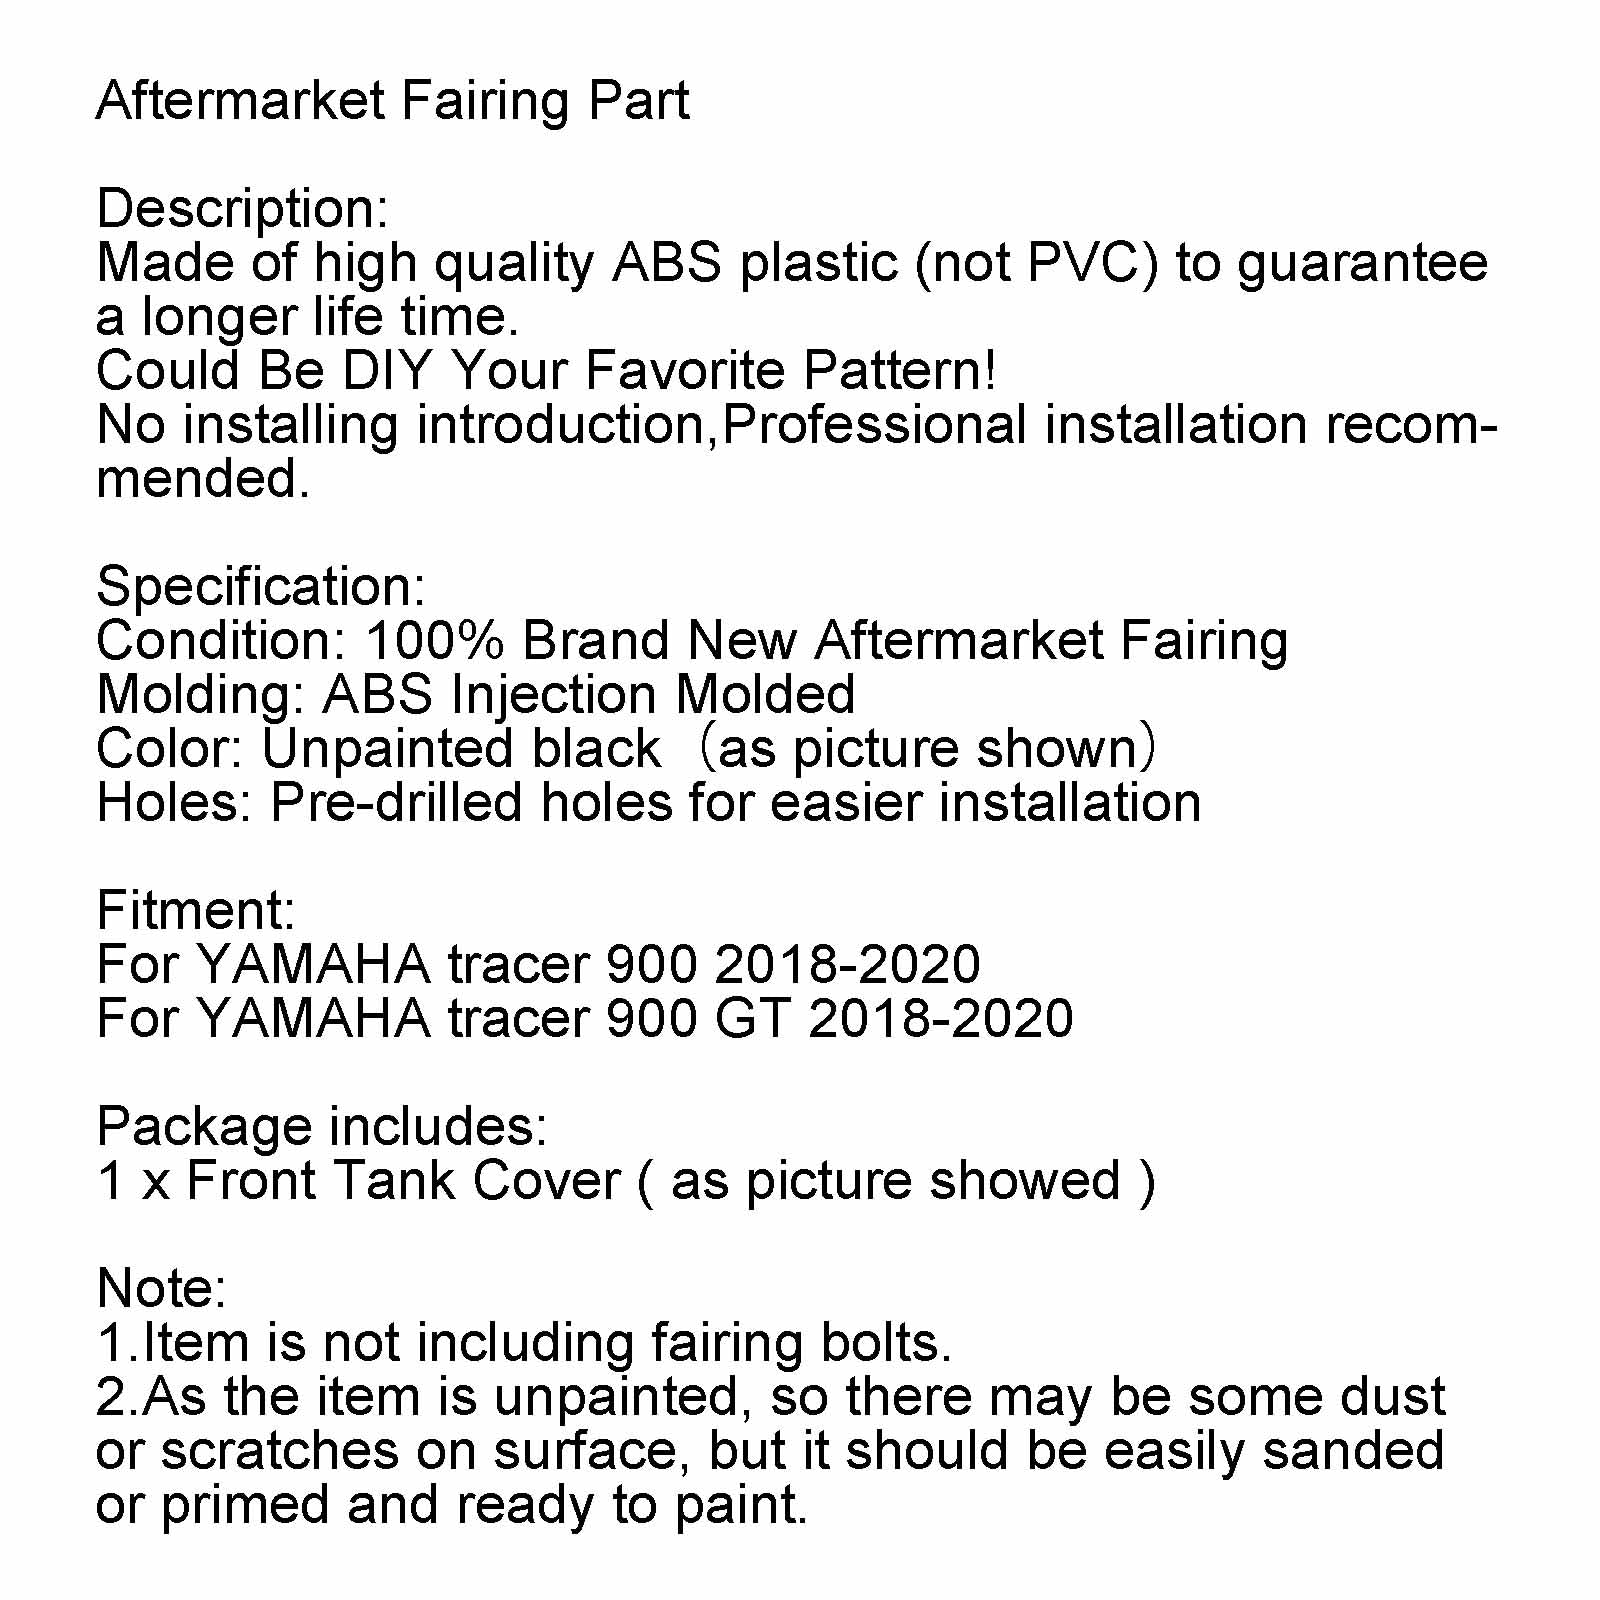 Pannello carenatura coperchio serbatoio anteriore non verniciato per Yamaha Tracer 900/GT 2018-2020